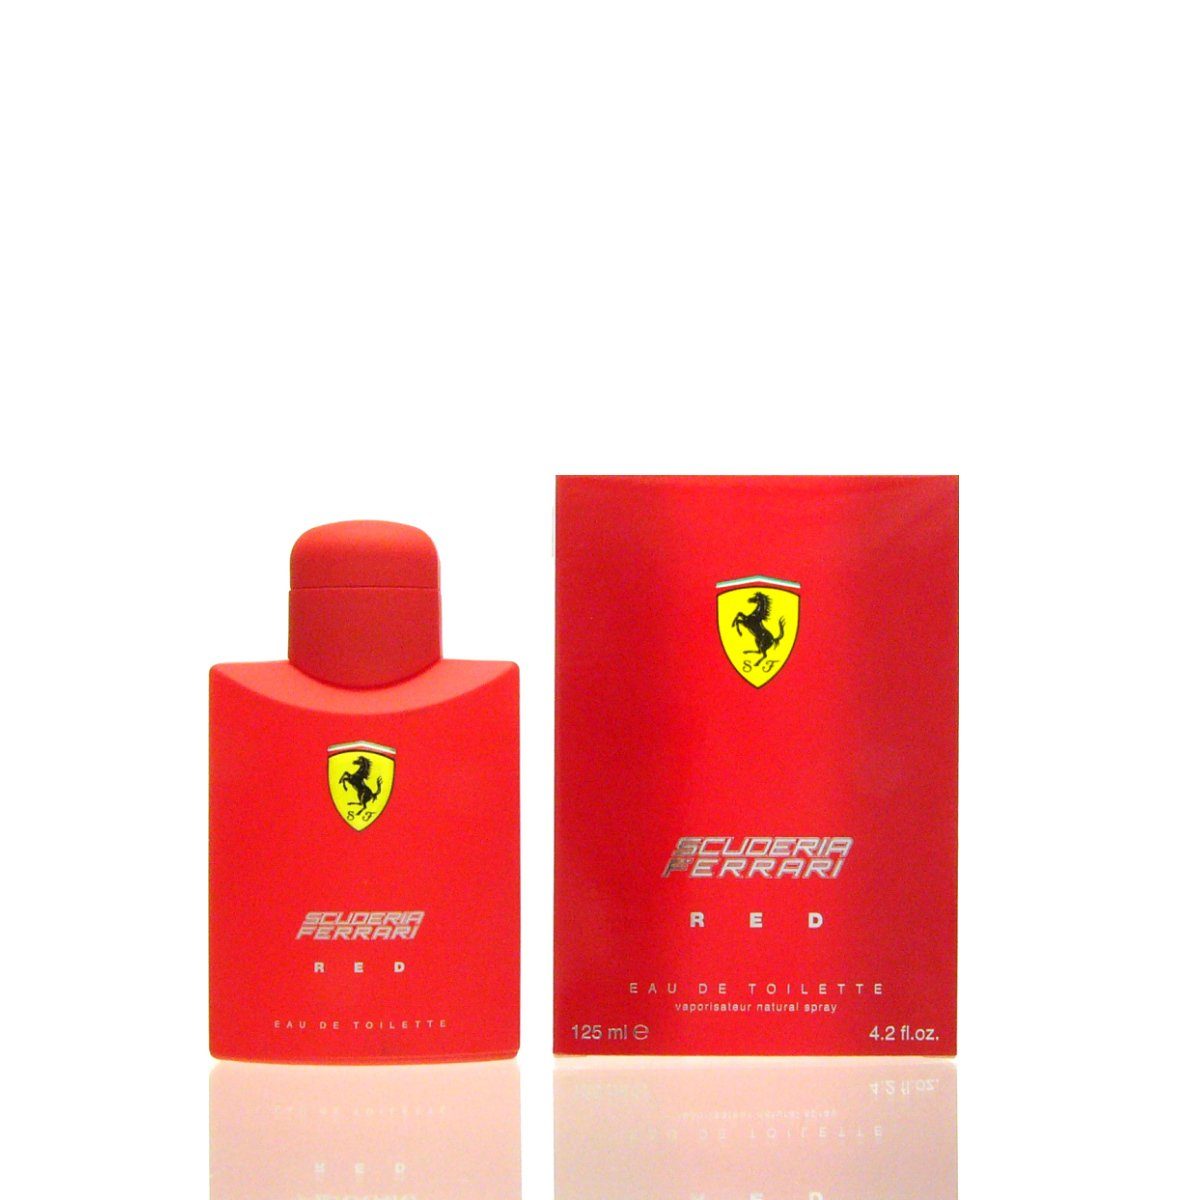 Ferrari Eau de Toilette Scuderia Ferrari Red Eau de Toilette 125 ml | Eau de Toilette